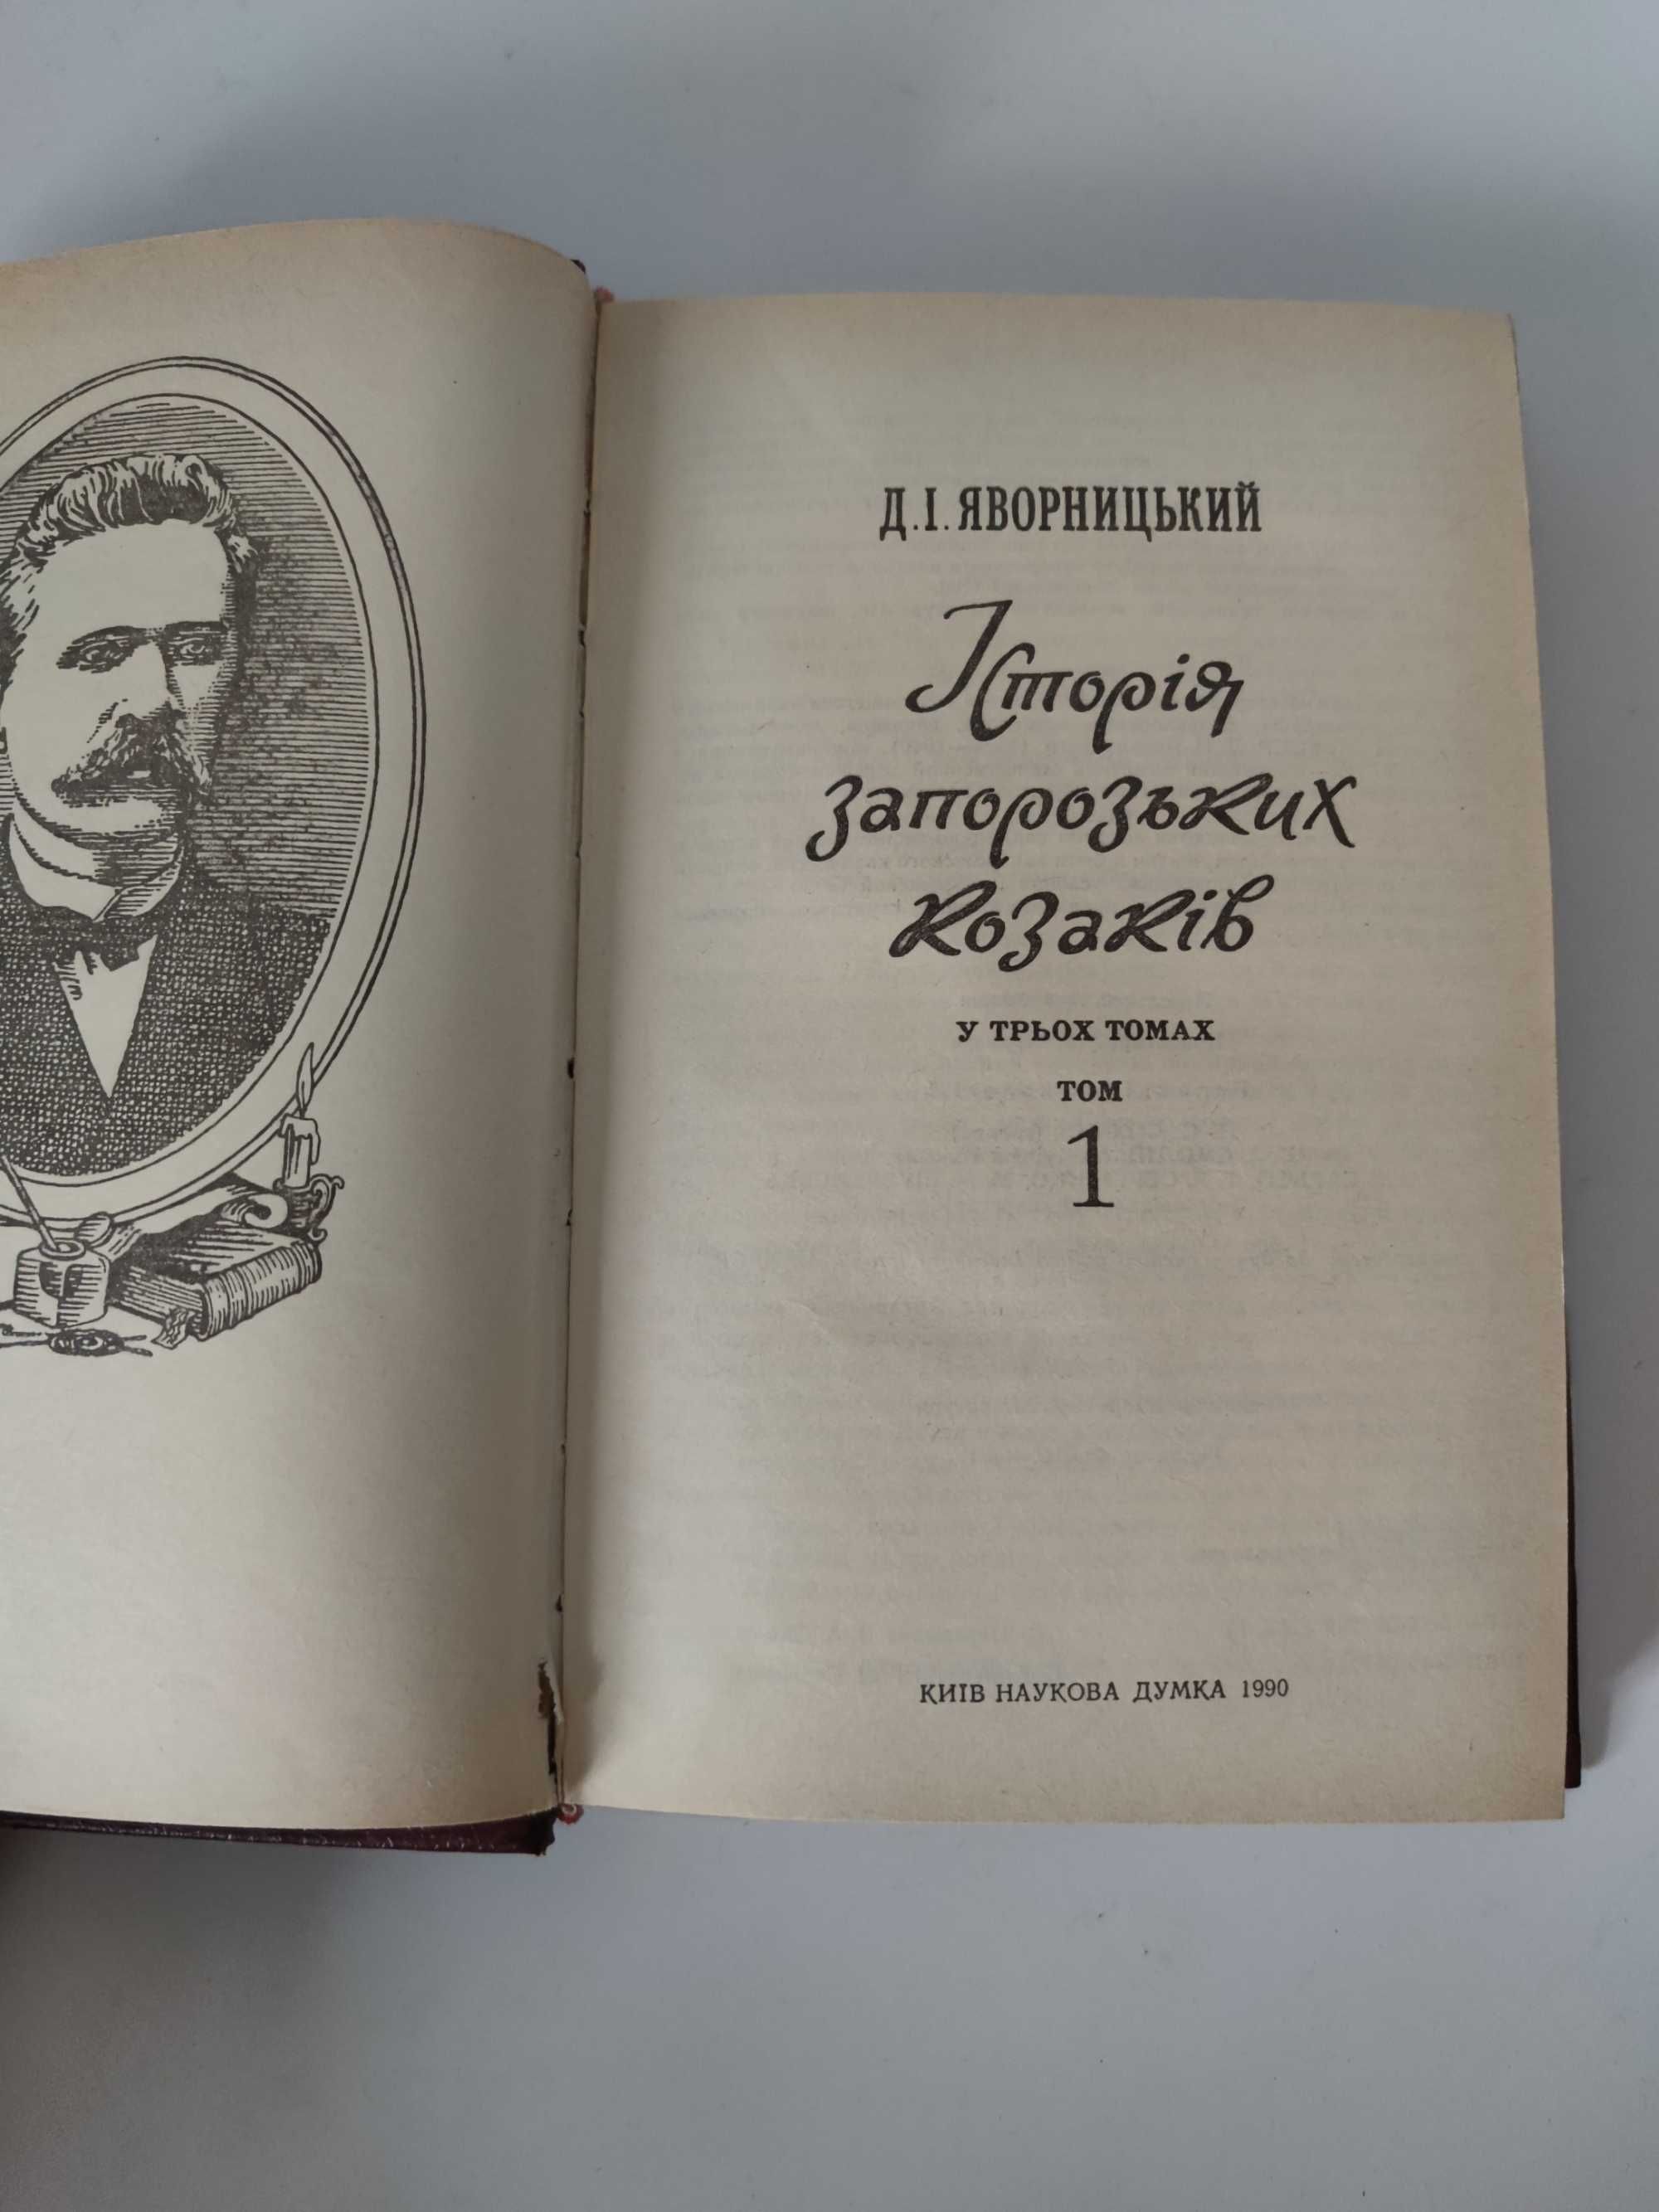 Історія запорізьких козаків 1 і 2 т., Д.І.Яворницький (Наук.вид. 1990)